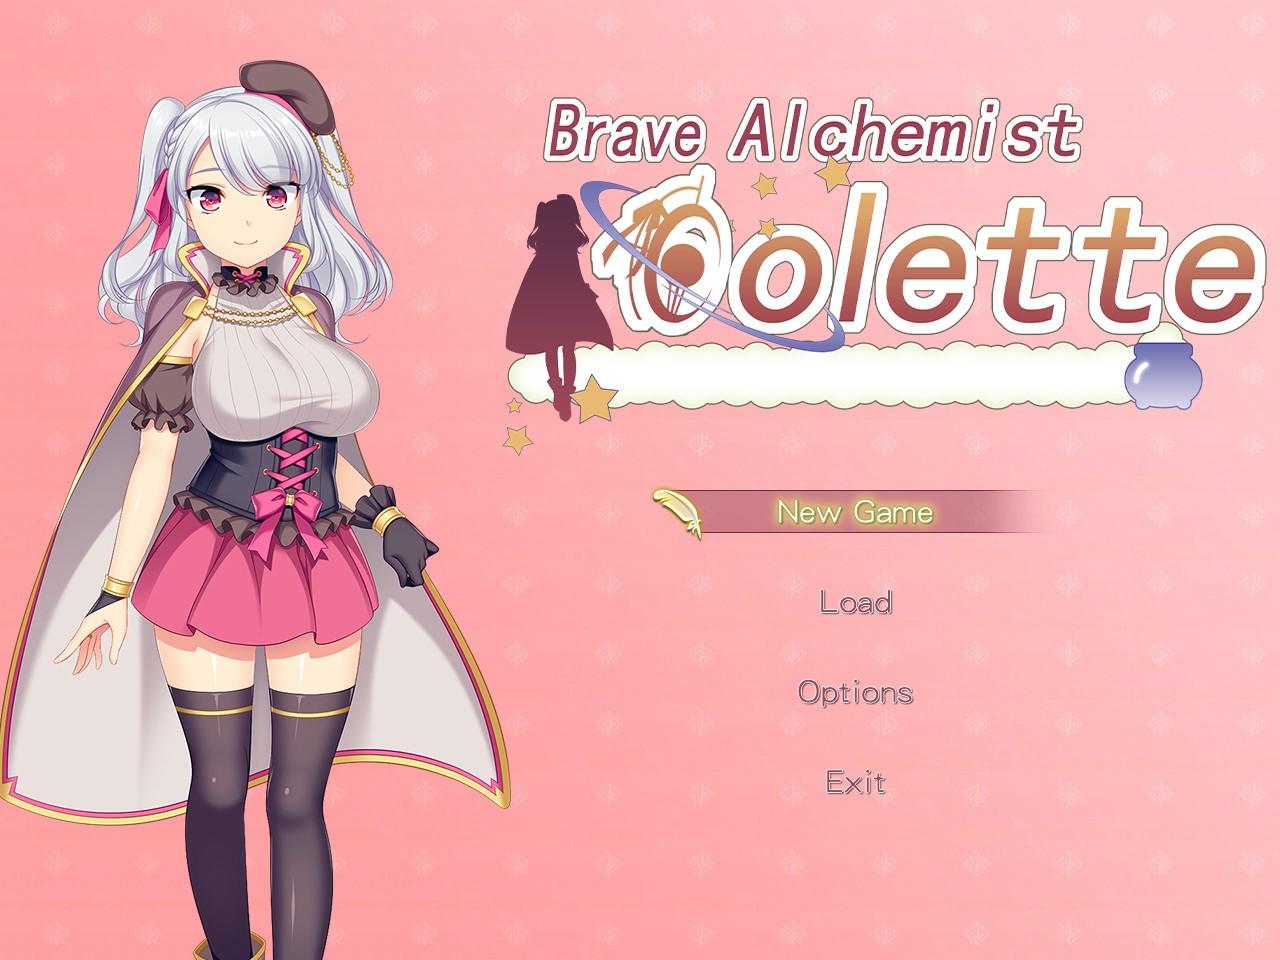 Brave Alchemist Colette Steam Altergift 30.17 $